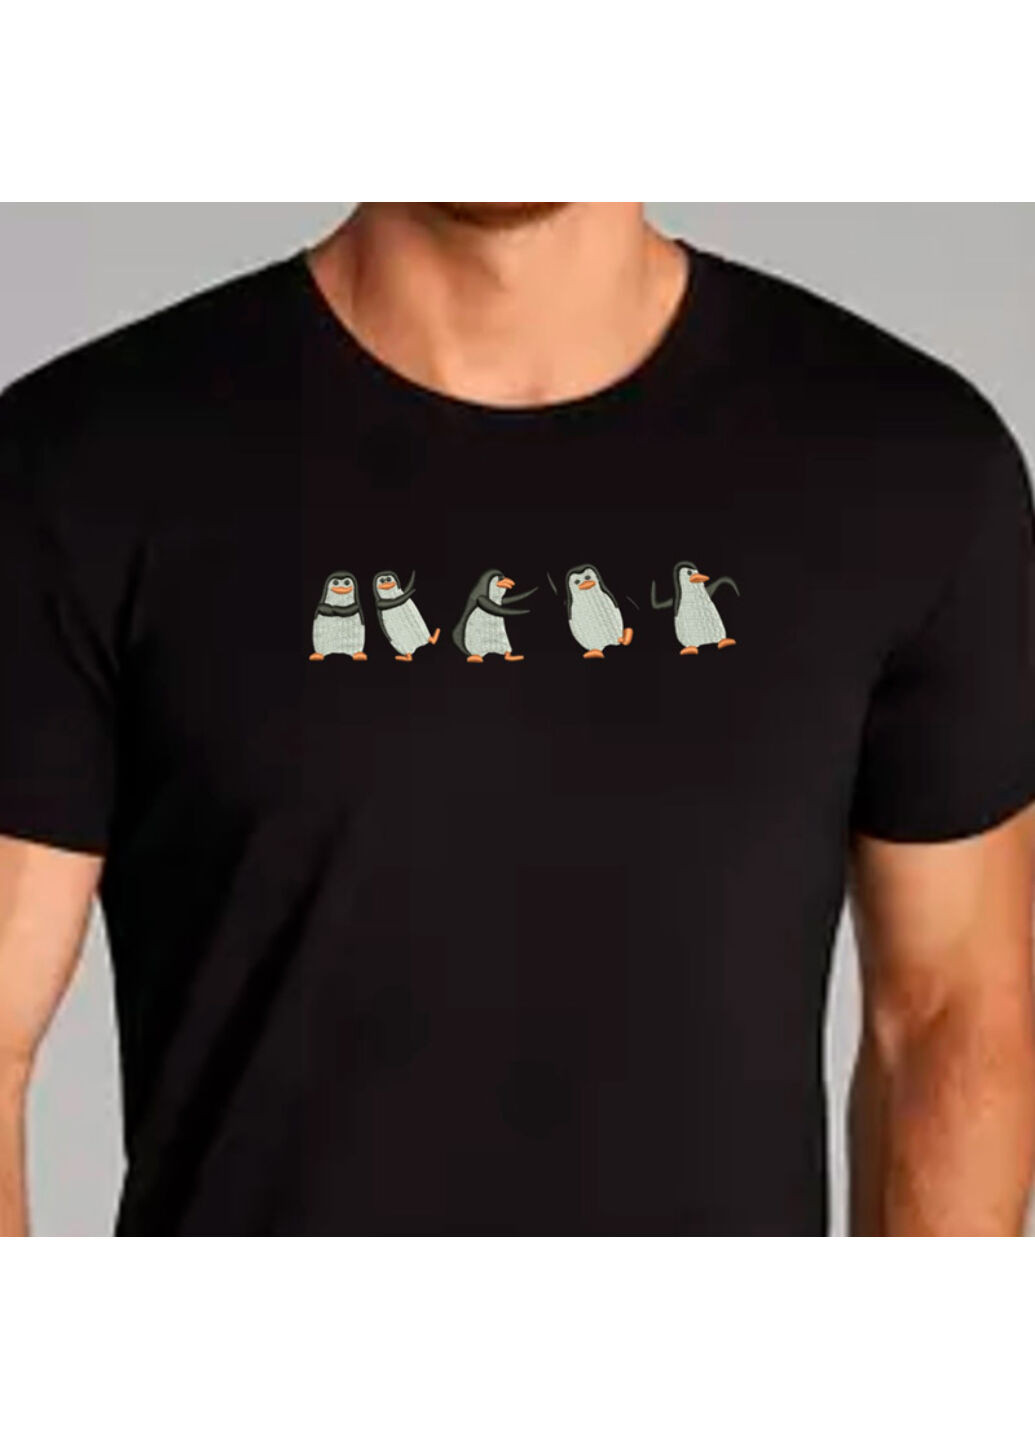 Чорна футболка з вишивкою пінгвінів 01-2 чоловіча чорний xl No Brand